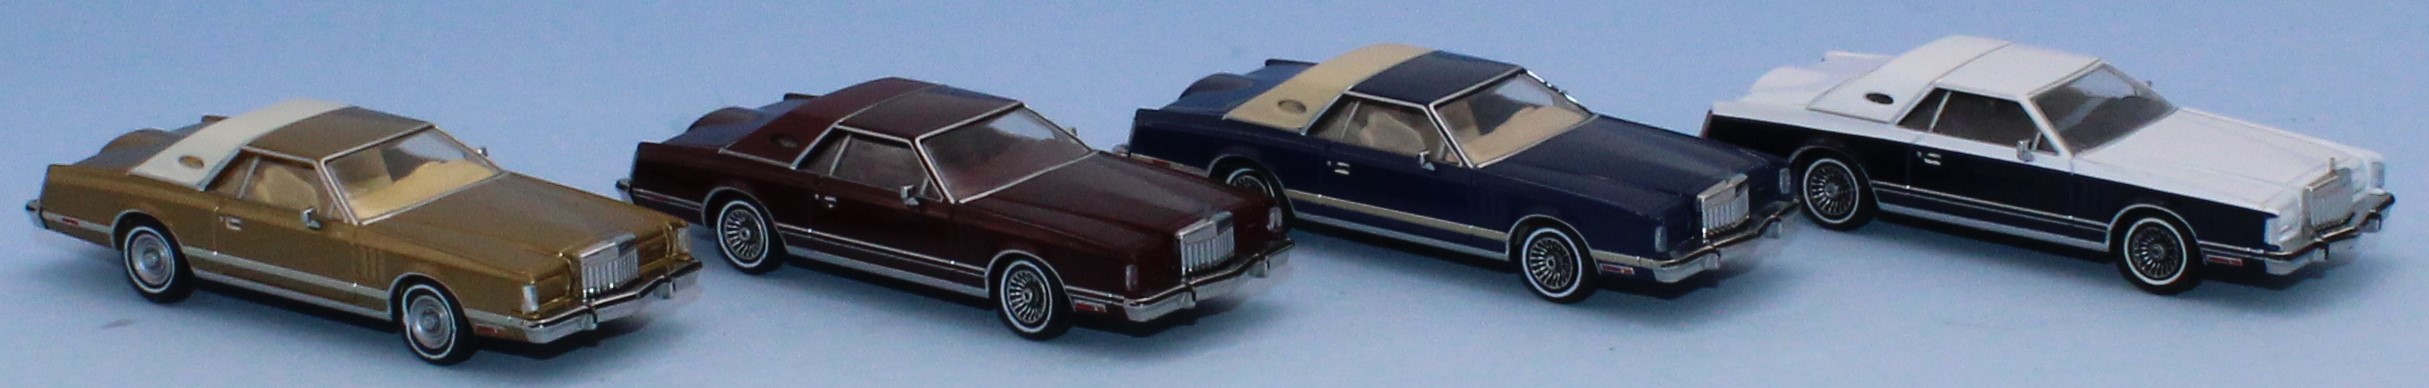 Lincoln continental cinquième génération (1970 - 1979)